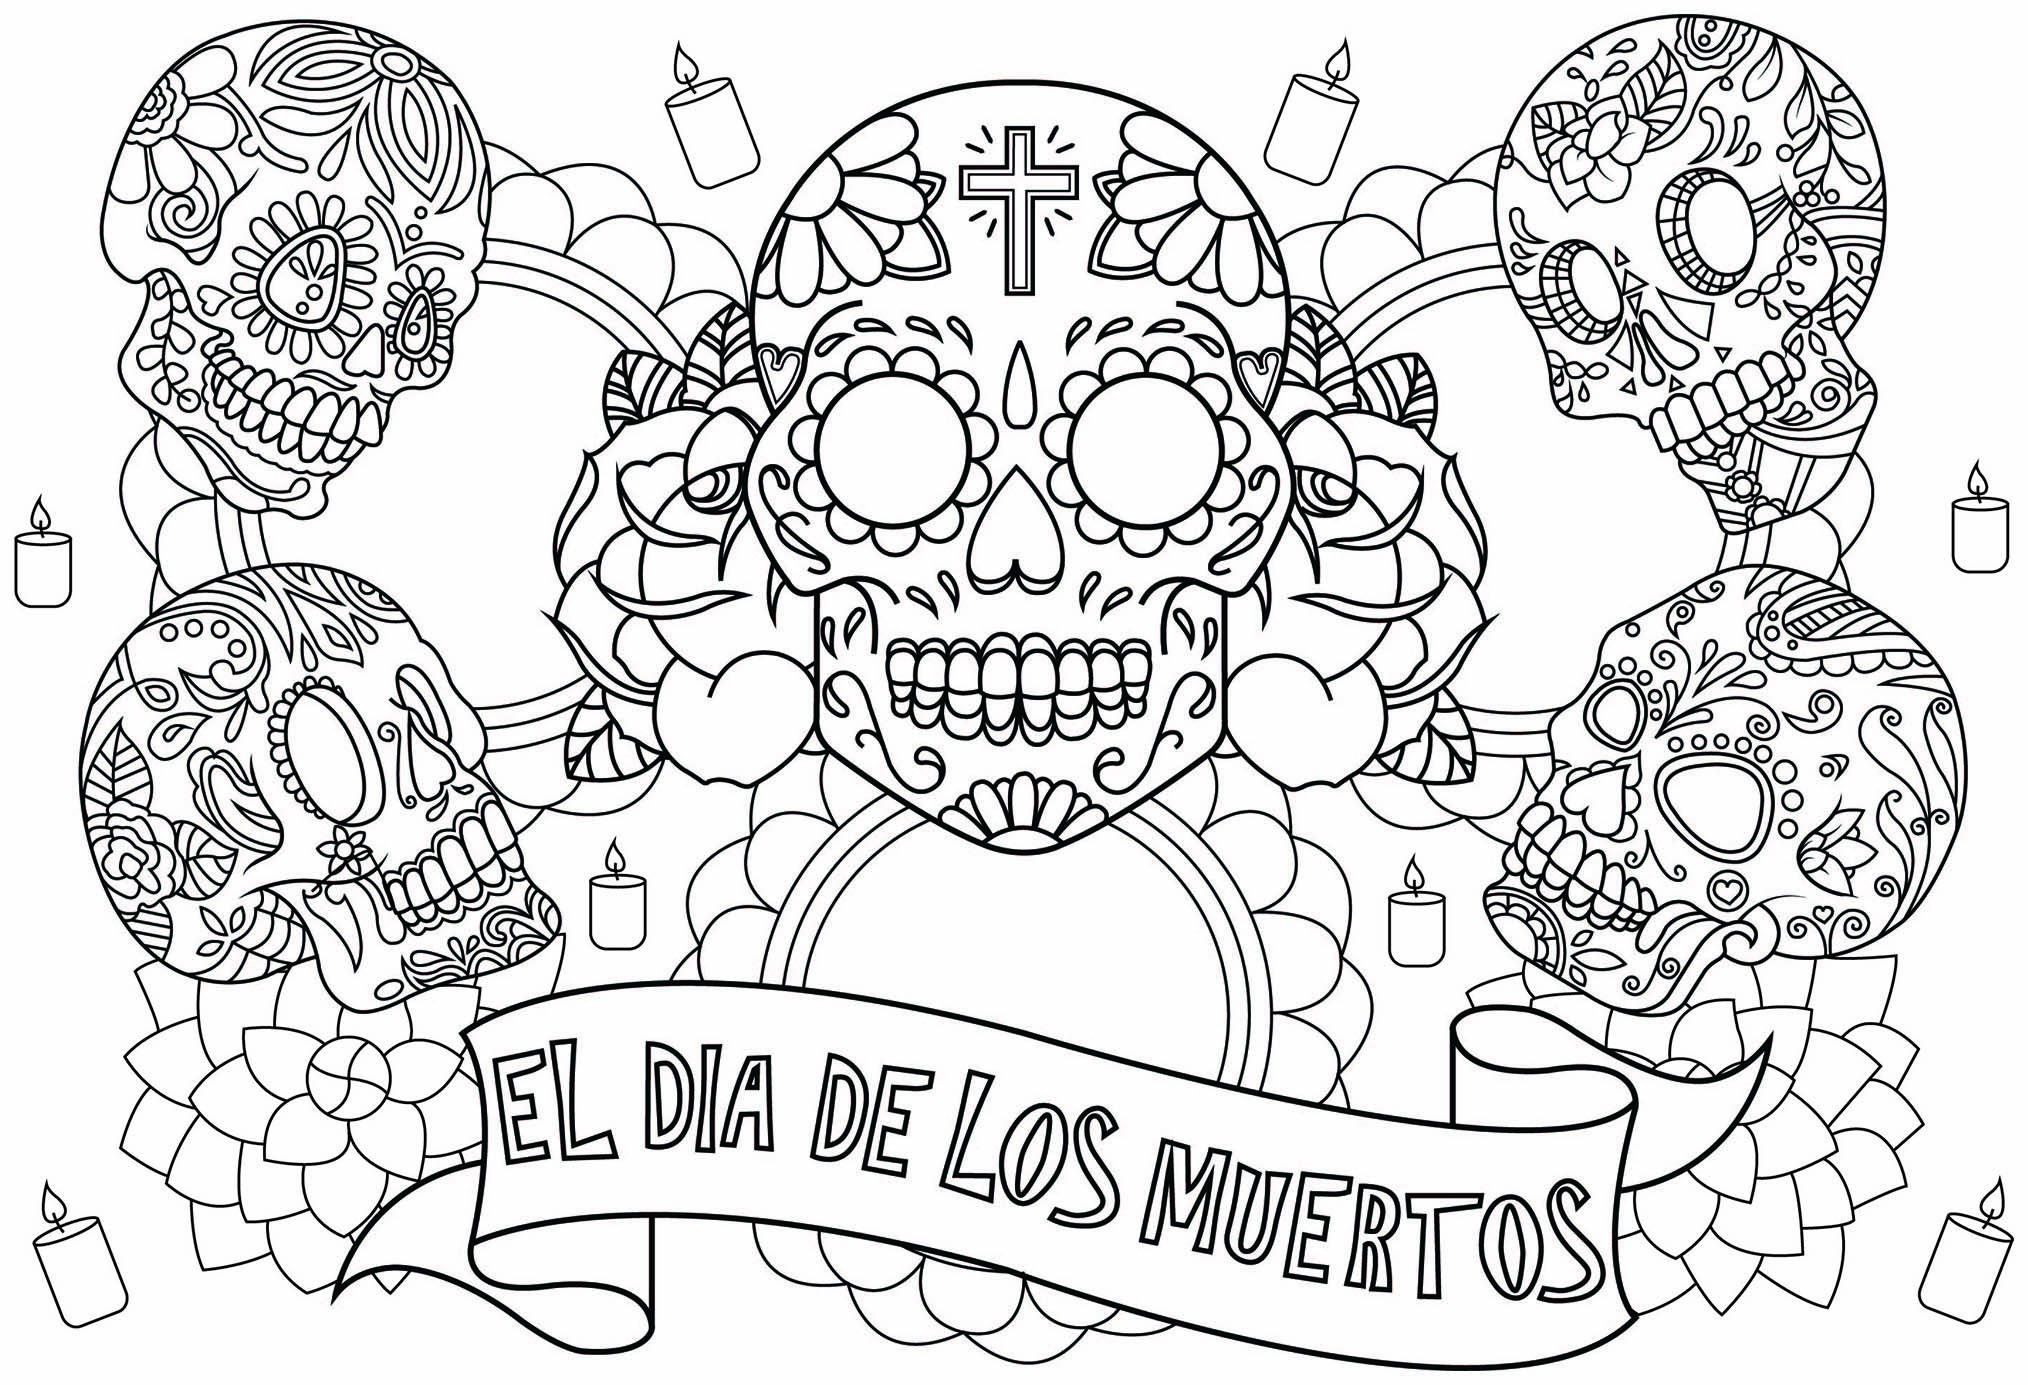 Coloring page to celebrate El Día de los muertos, with five skulls, Artist : Lucie